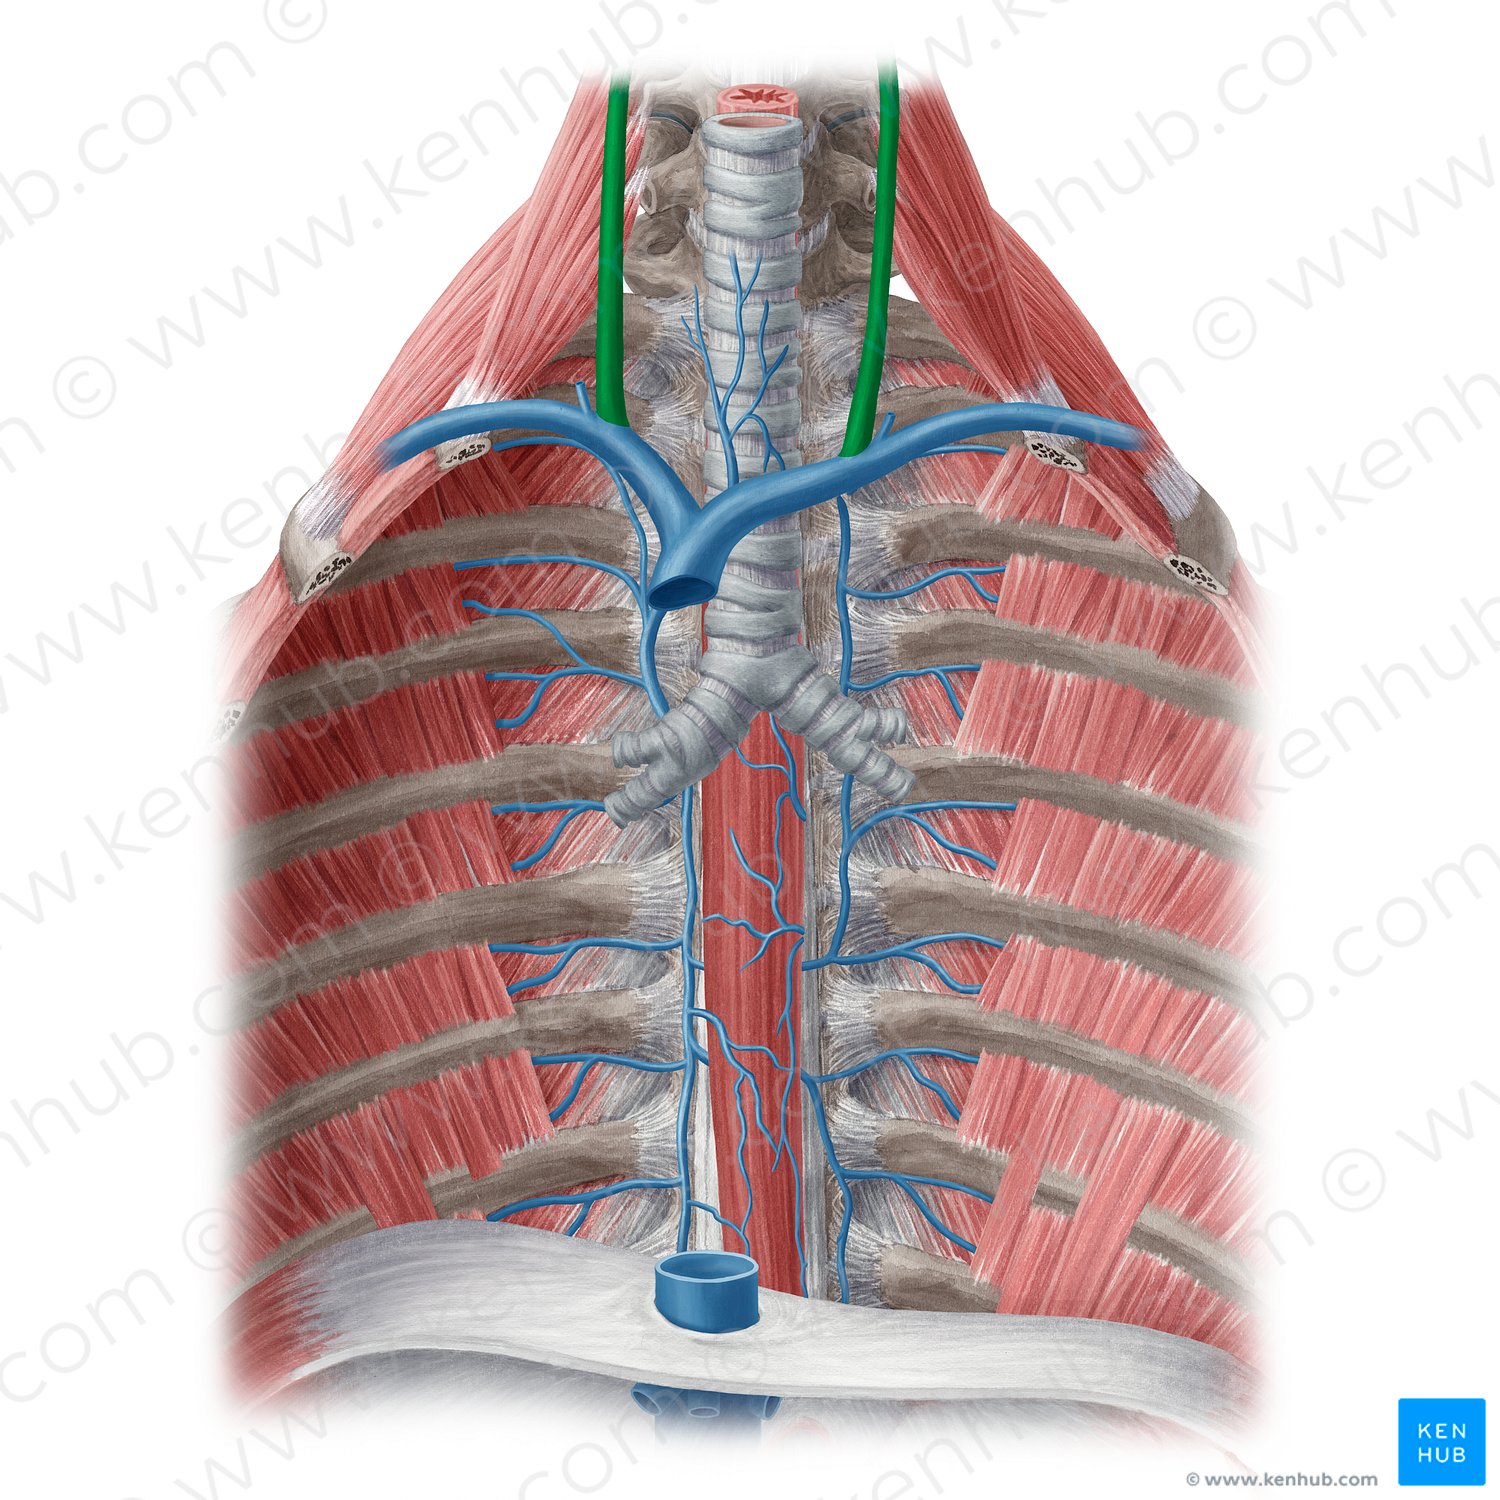 Internal jugular vein (#20481)